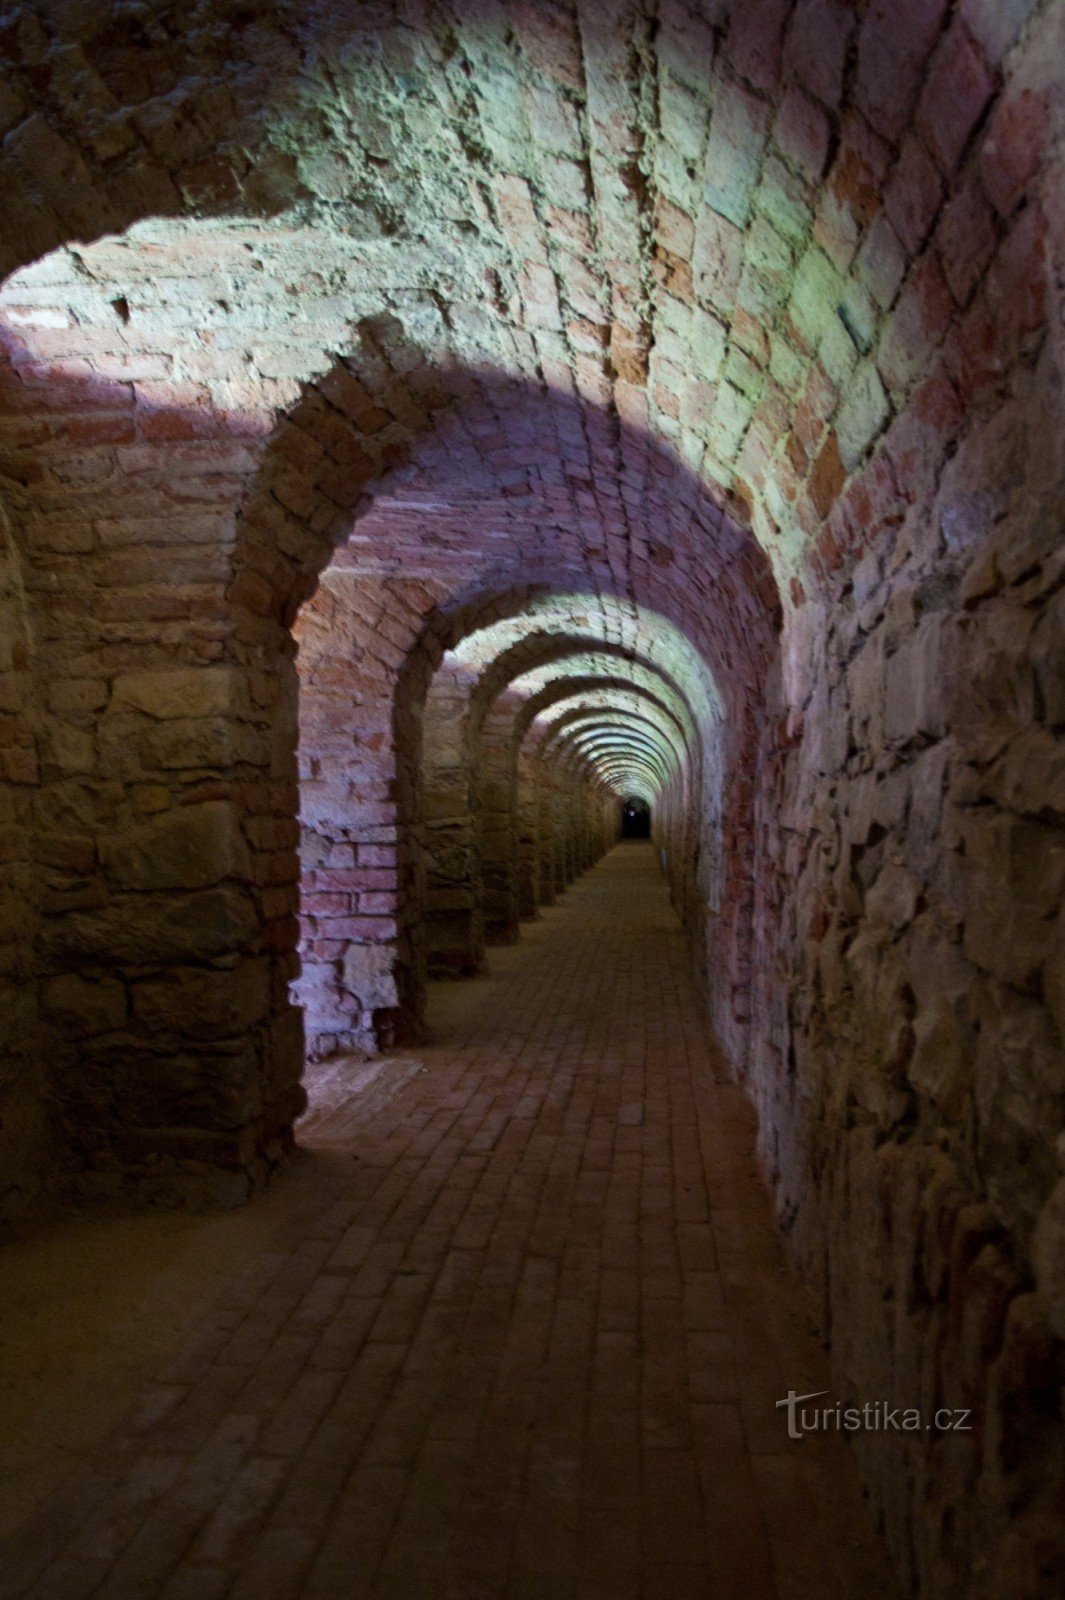 Φρούριο Terezín - υπόγεια περάσματα